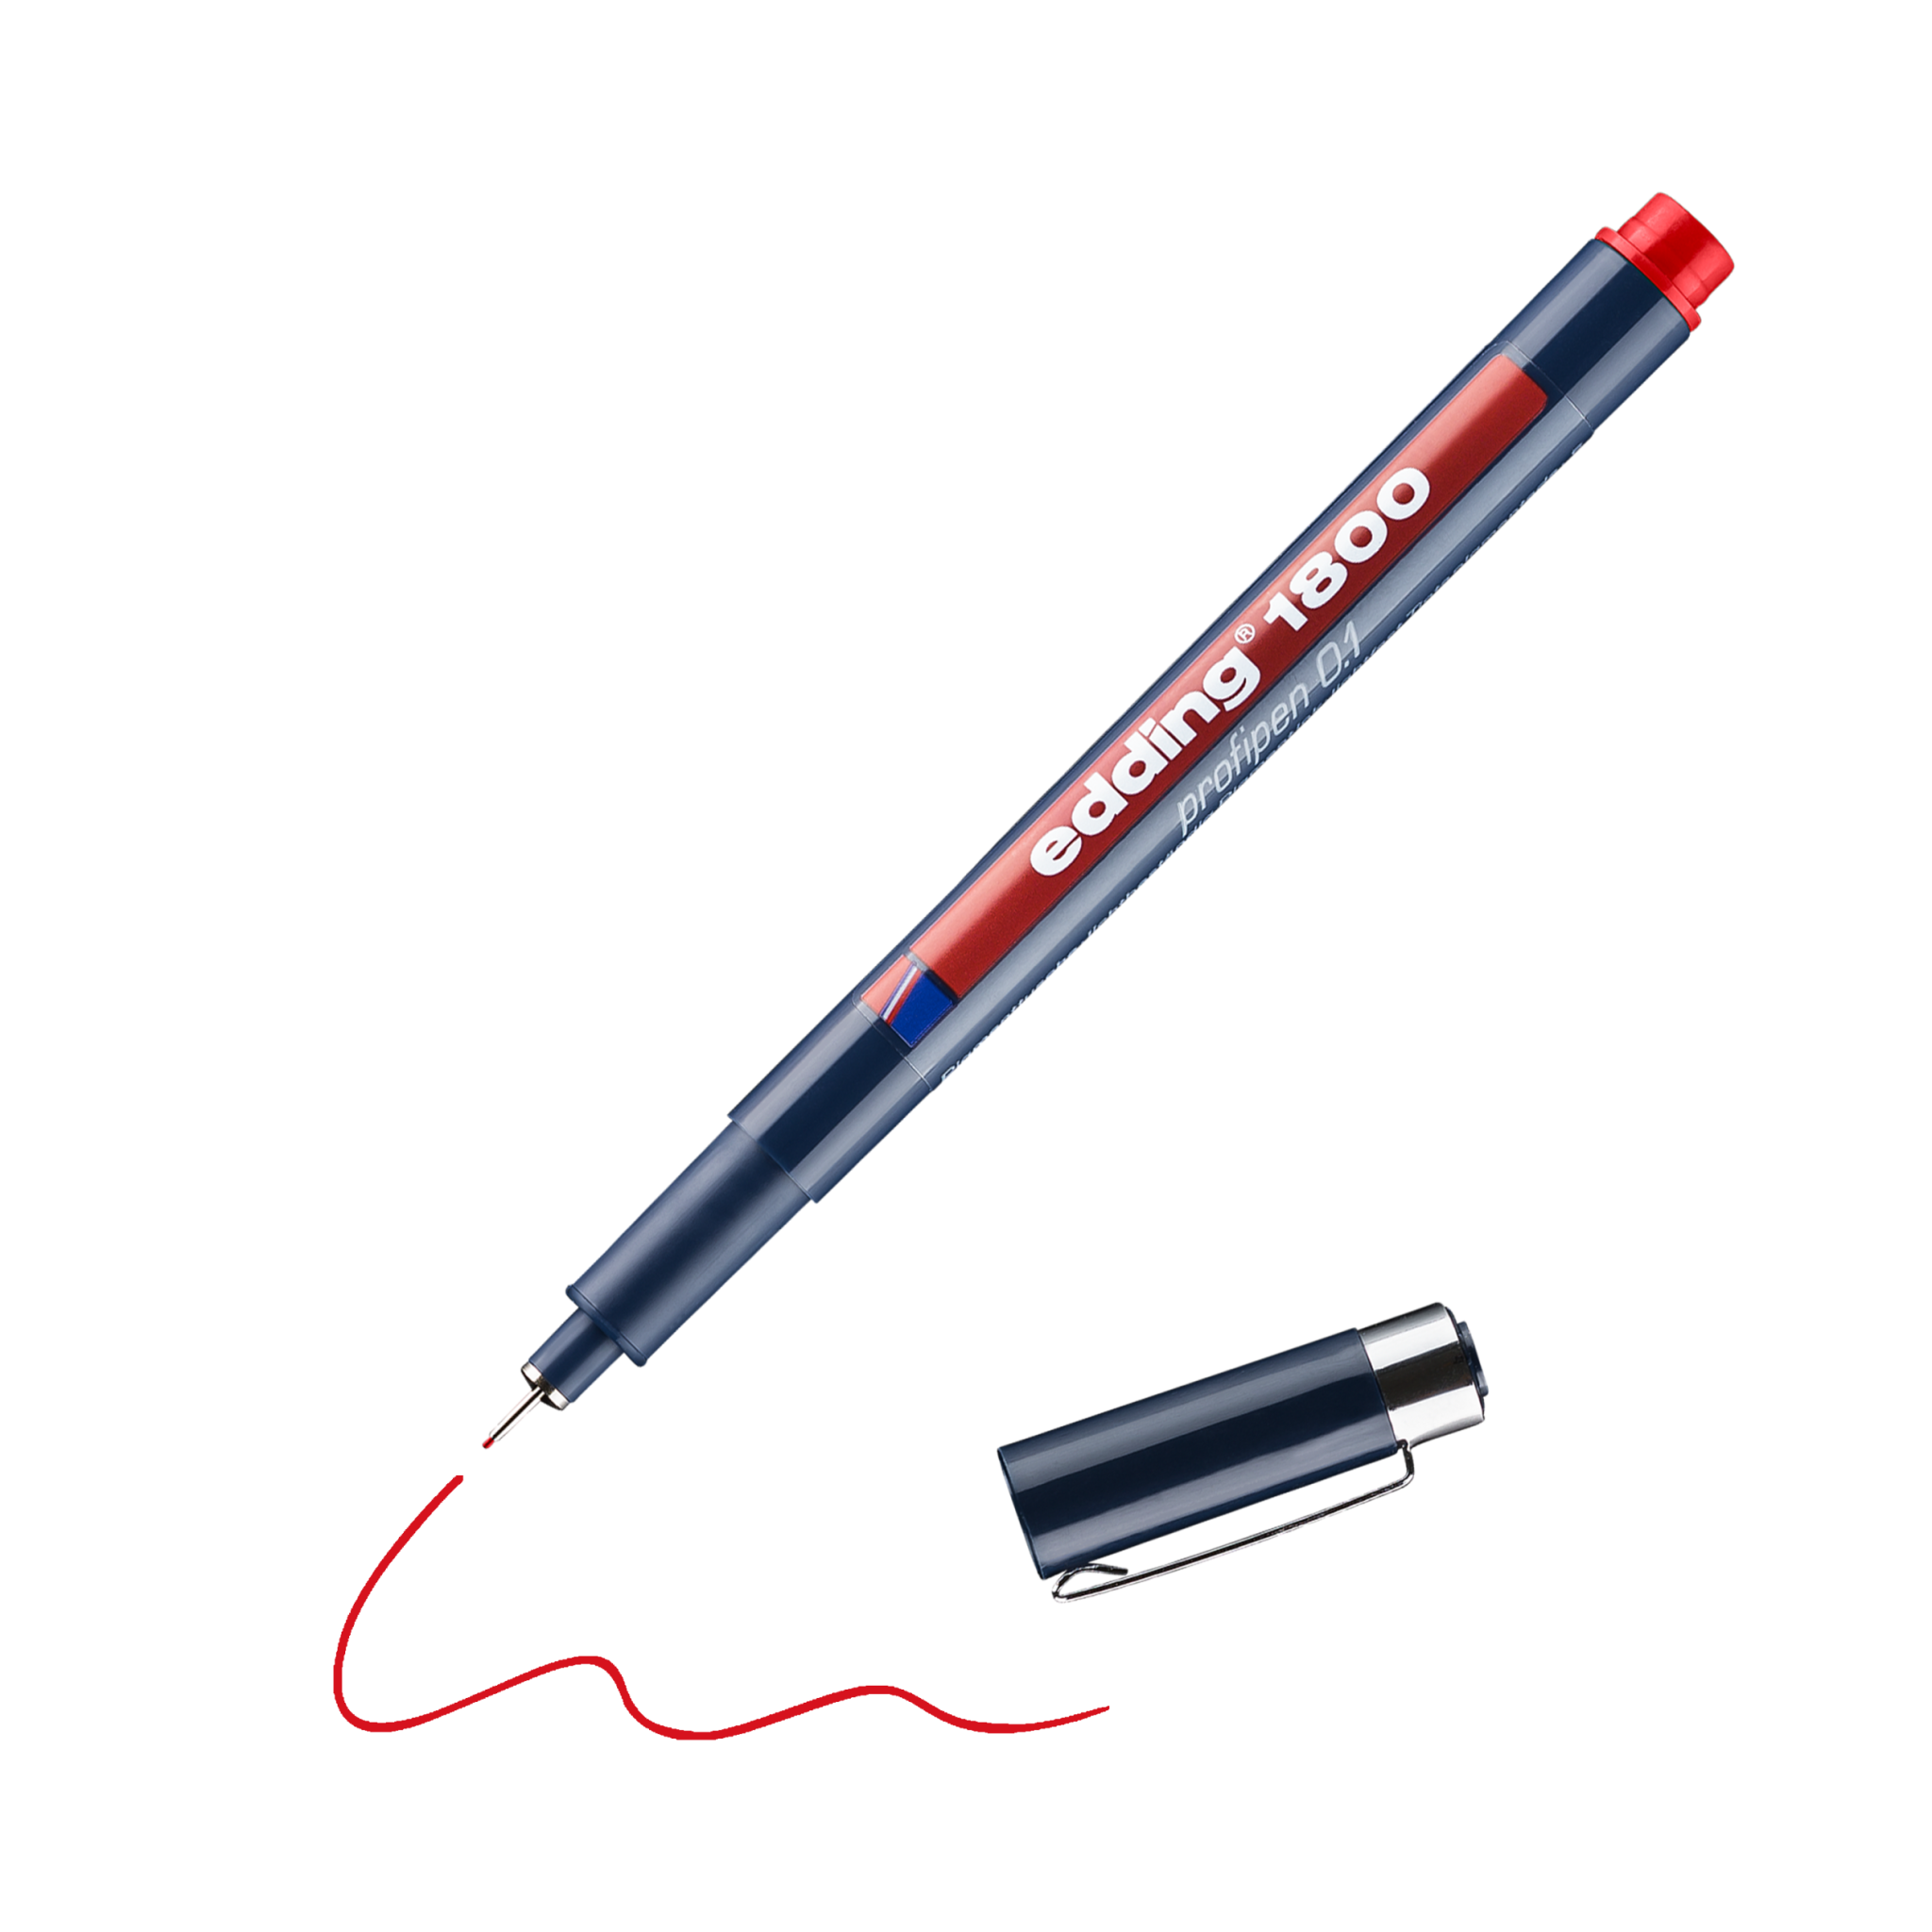 Ein roter edding 1800 Präzisionsfeinschreiber mit abgenommener Kappe, der eine rote Linie auf schwarzem Hintergrund zeichnet.